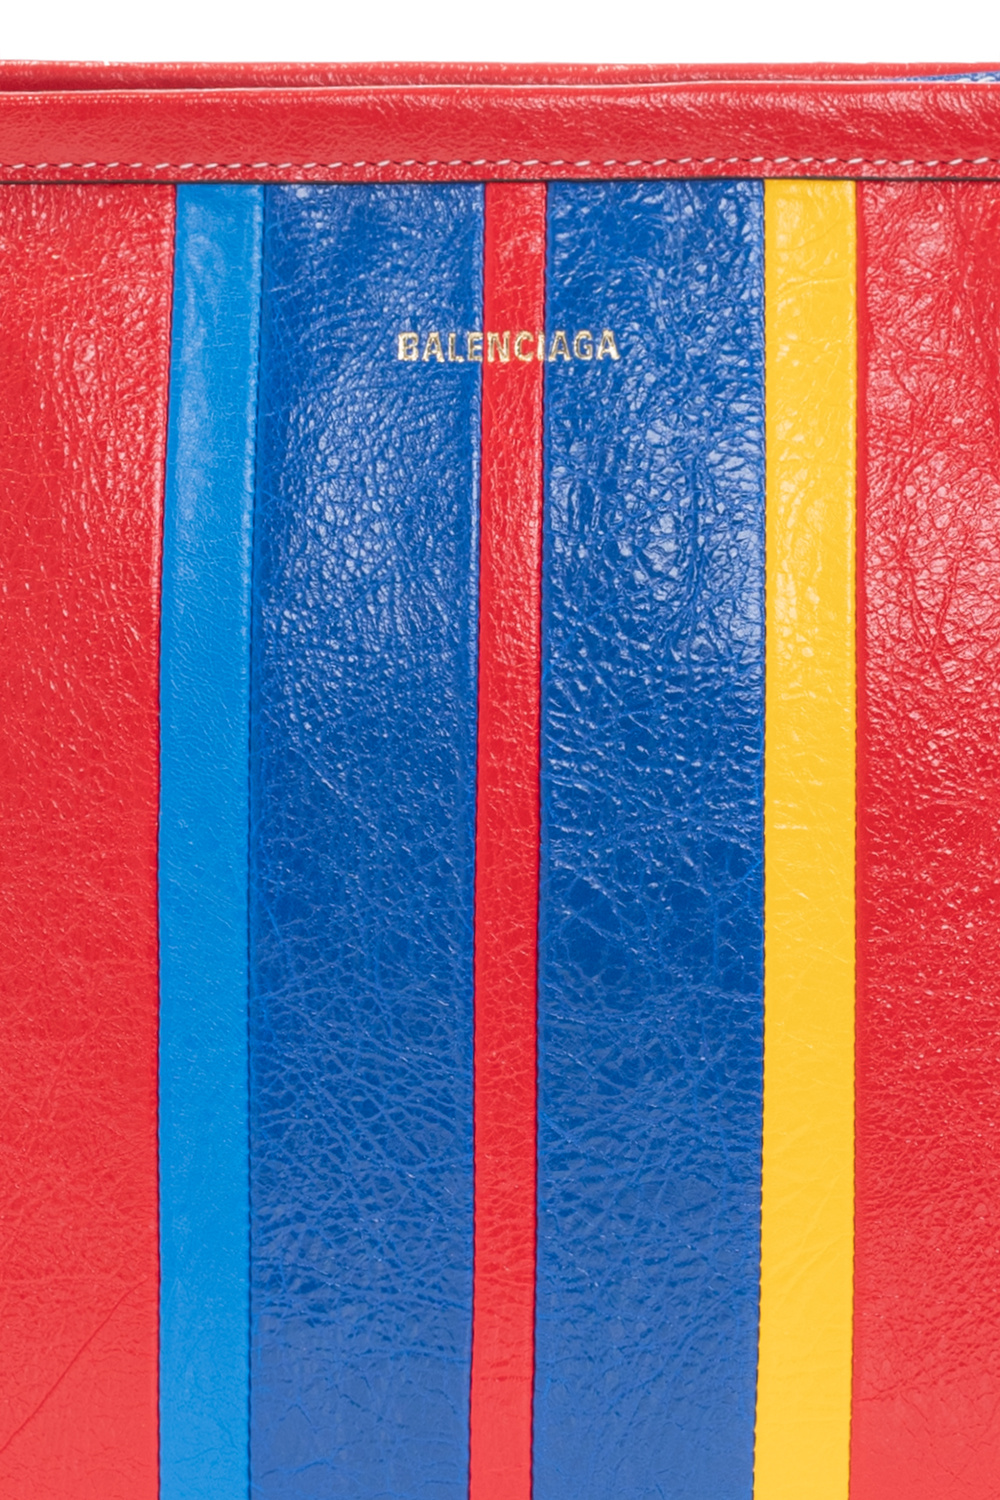 Balenciaga ‘Barbes’ hand bag